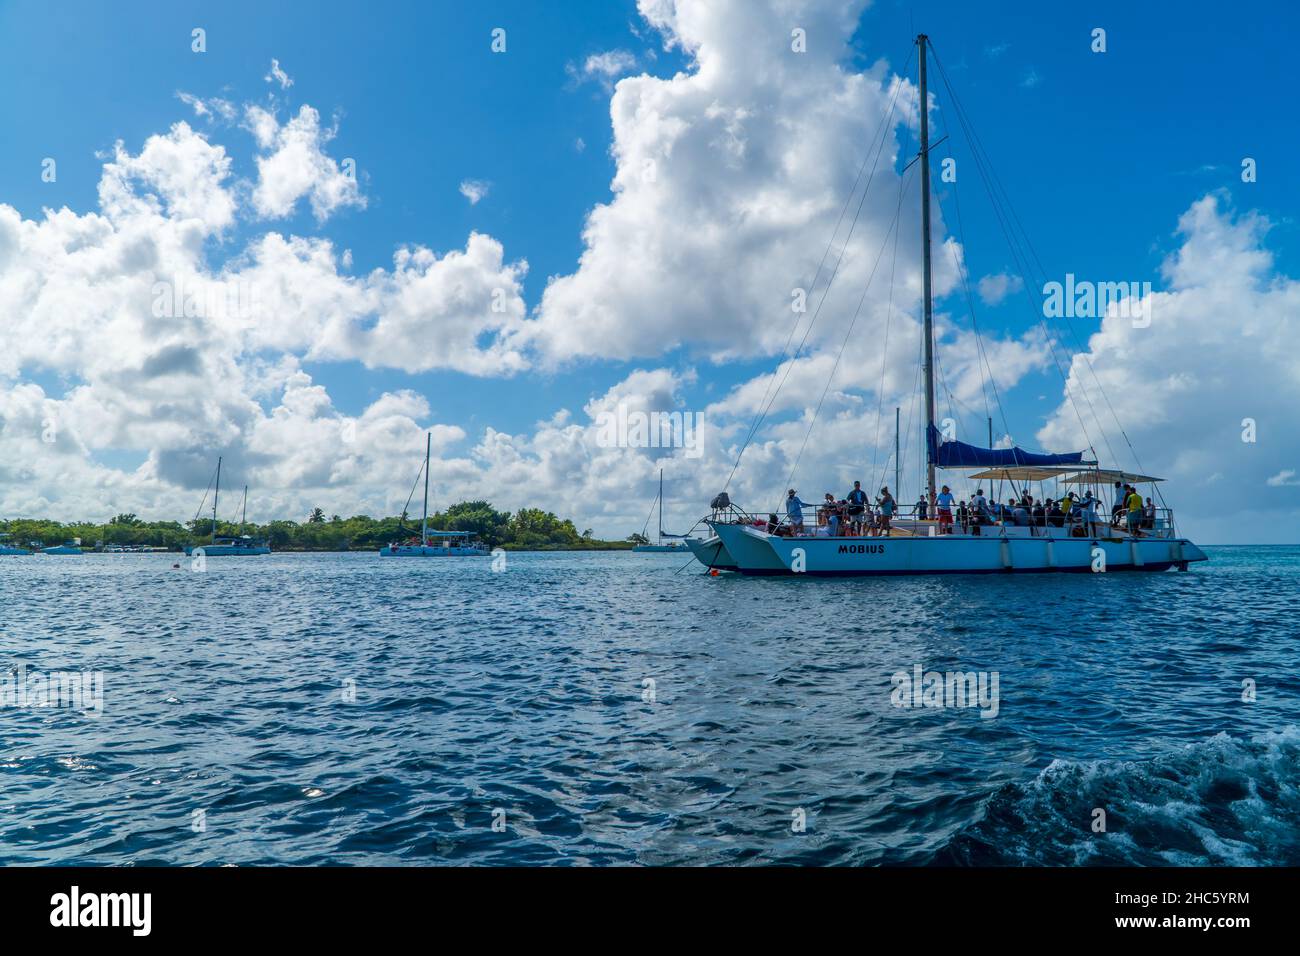 Vista de catamaranes turísticos sobre el agua en Bayahibe, República Dominicana Foto de stock